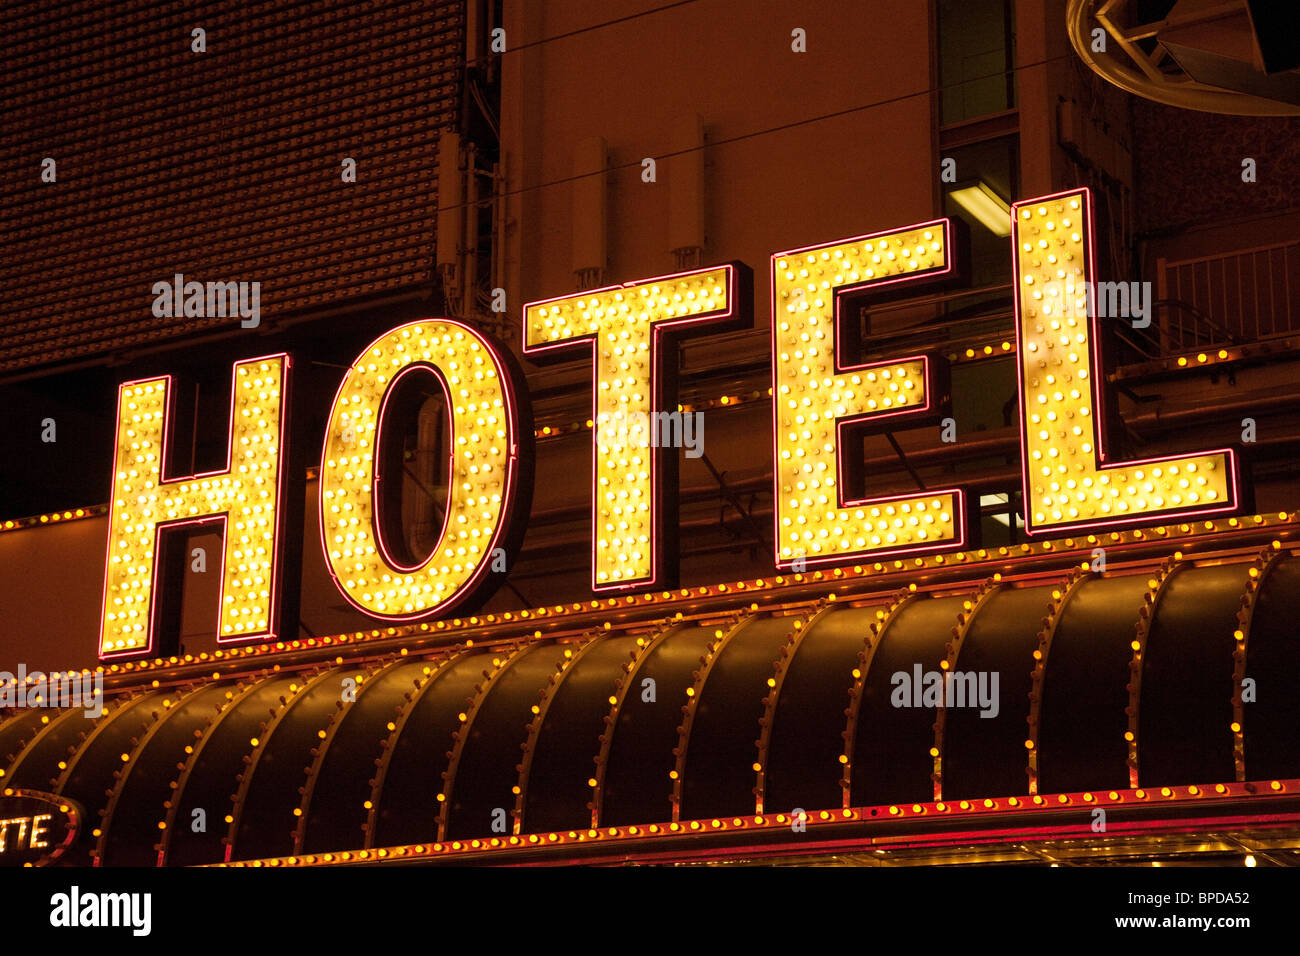 Hotel signo de neón, Las Vegas, Nevada, EE.UU. Foto de stock